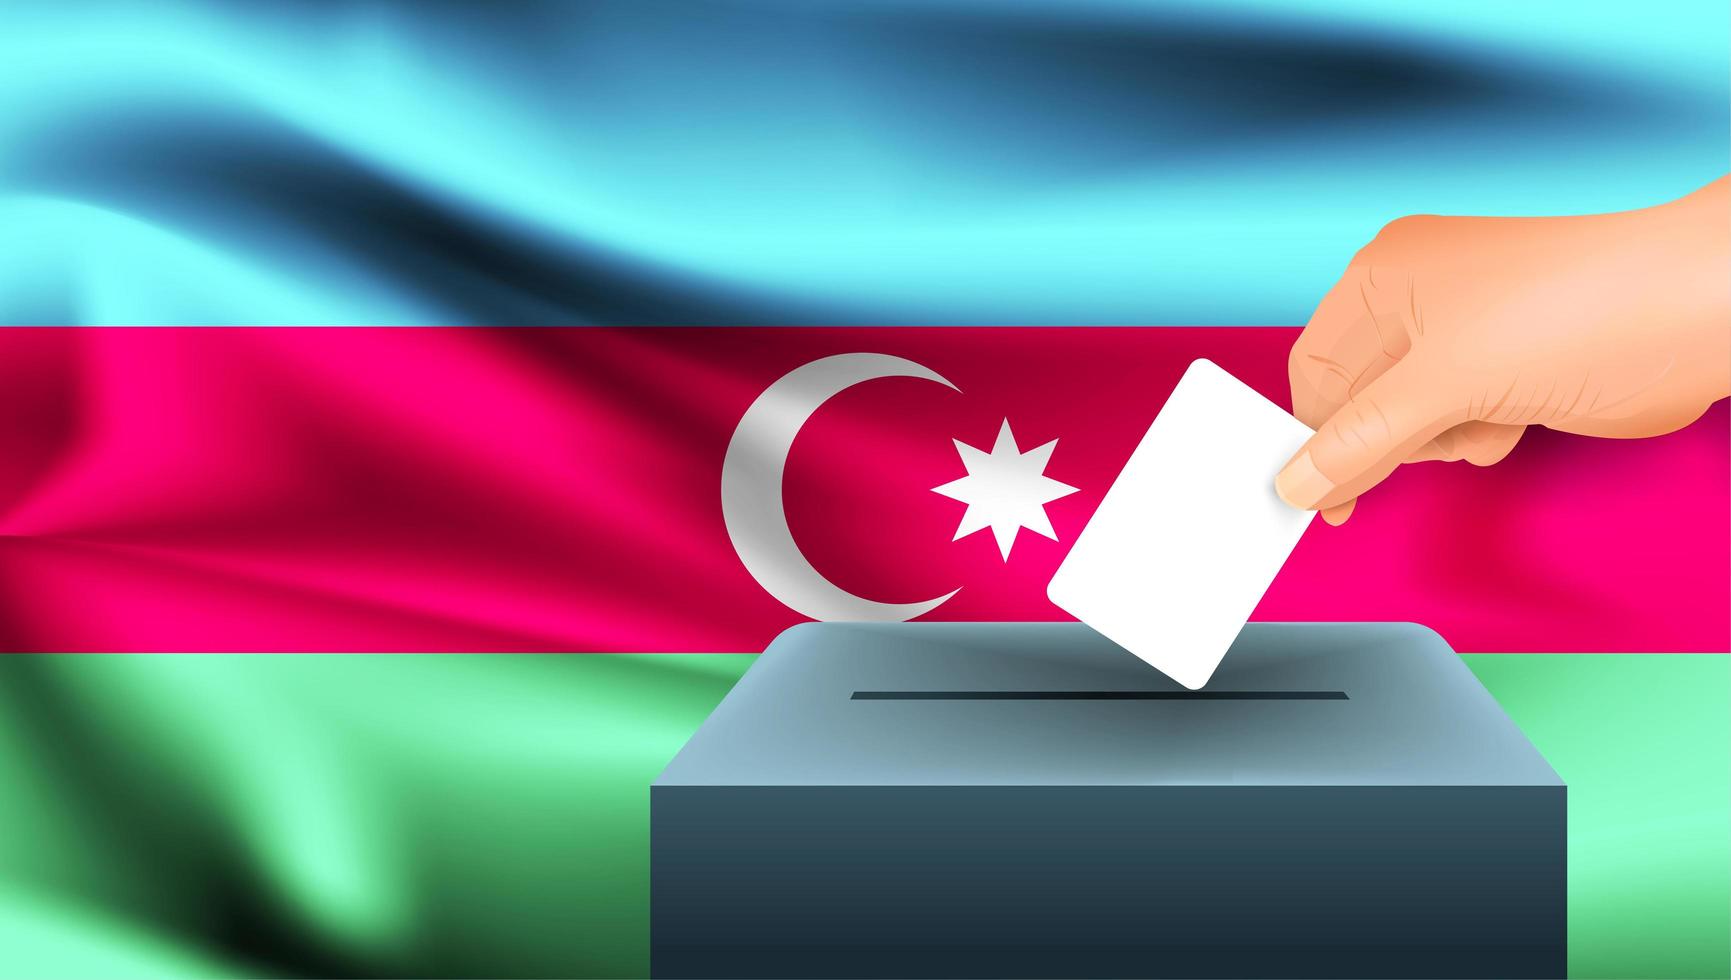 mão colocando cédula na urna com bandeira do azerbaijão vetor